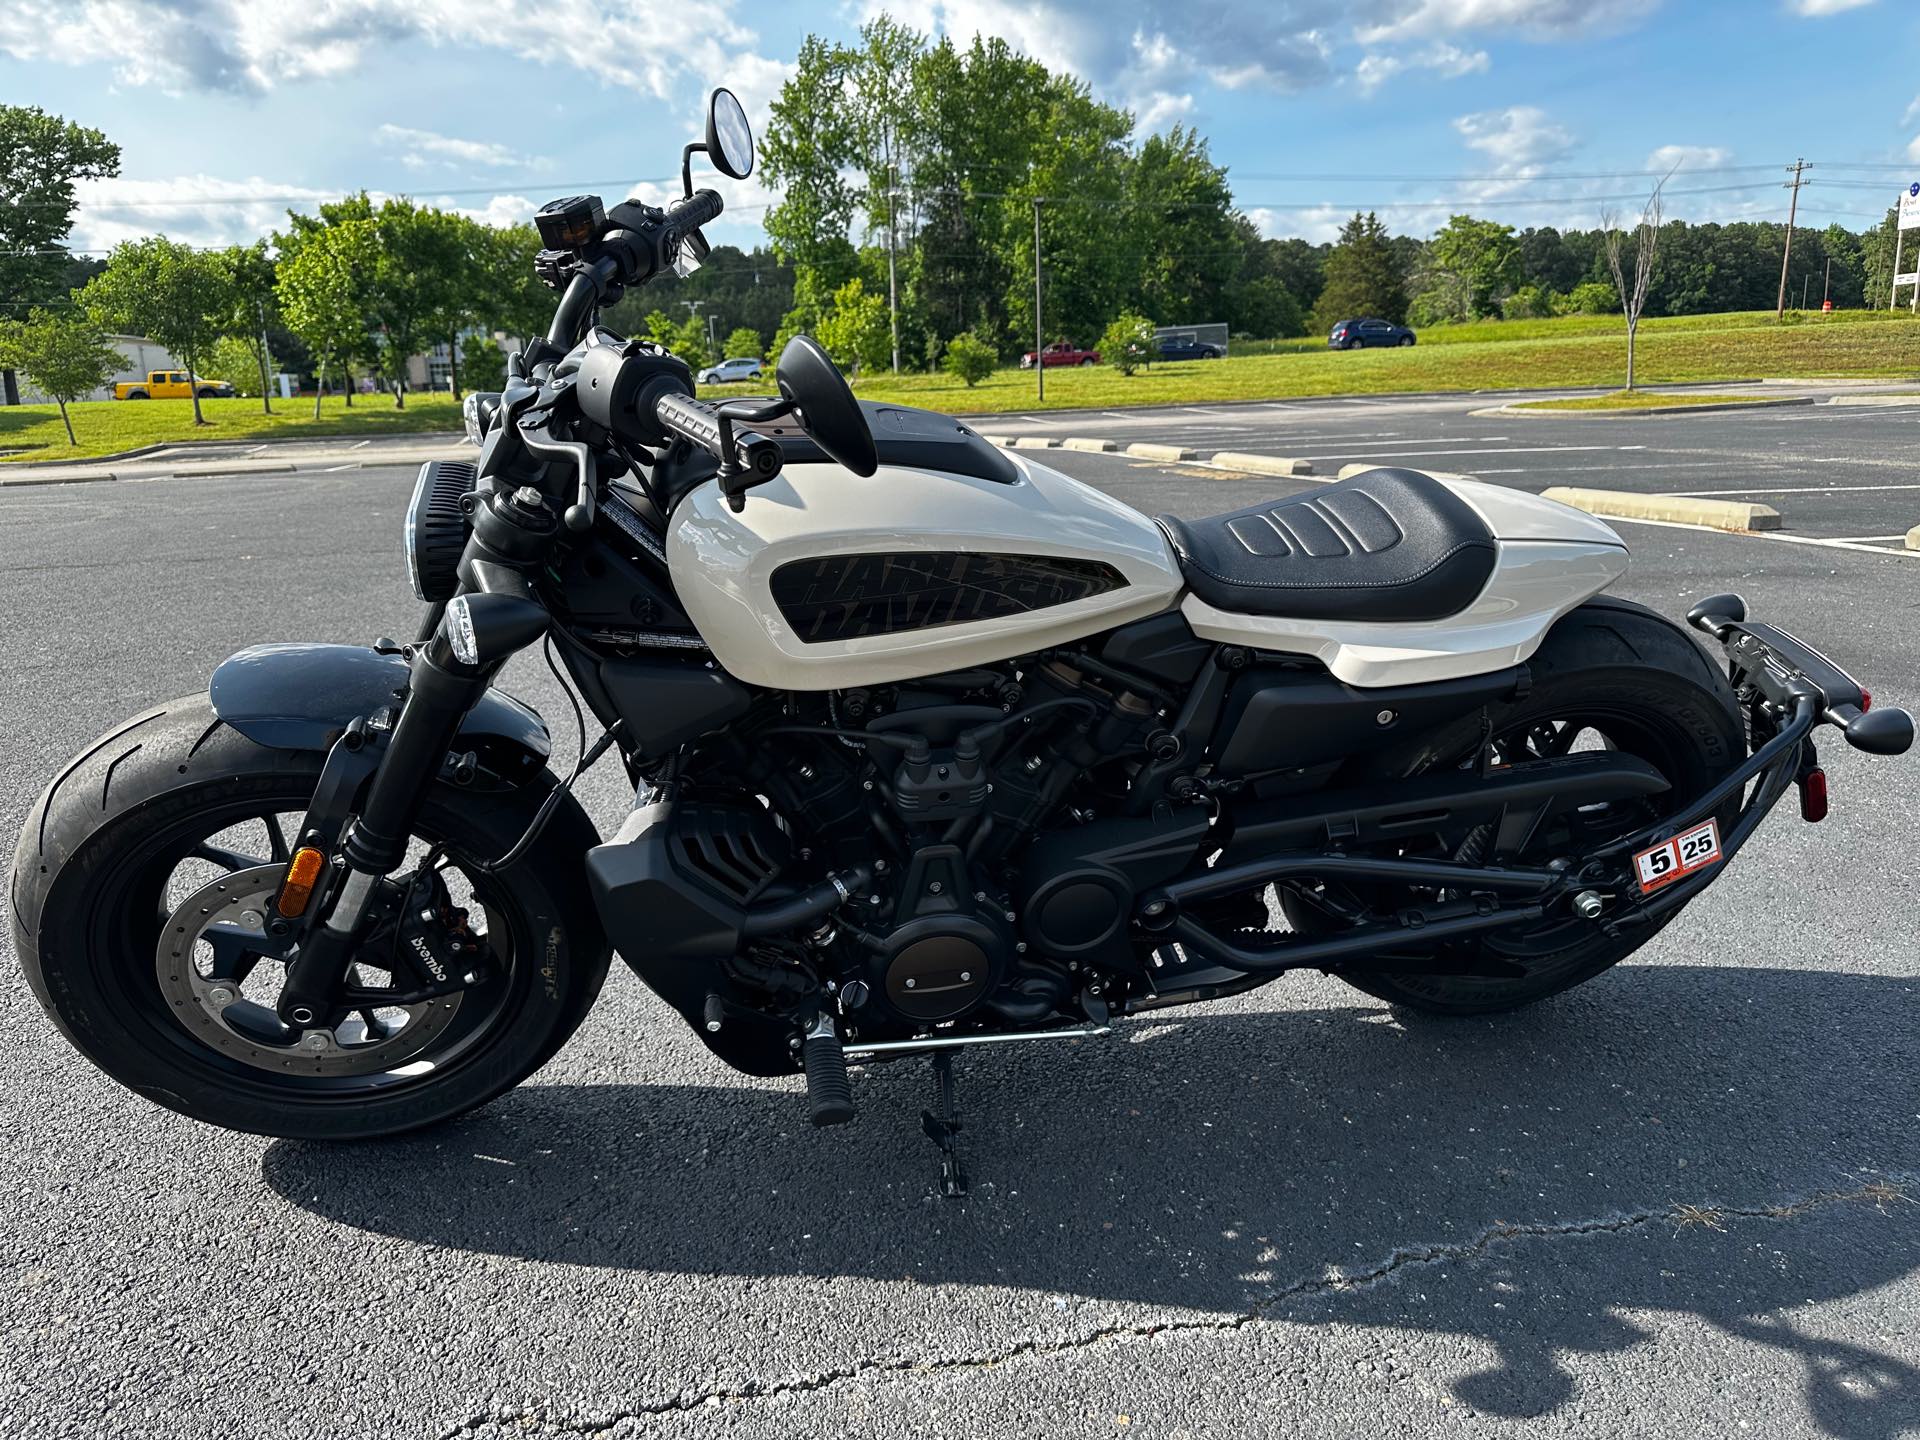 2023 Harley-Davidson Sportster at Steel Horse Harley-Davidson®